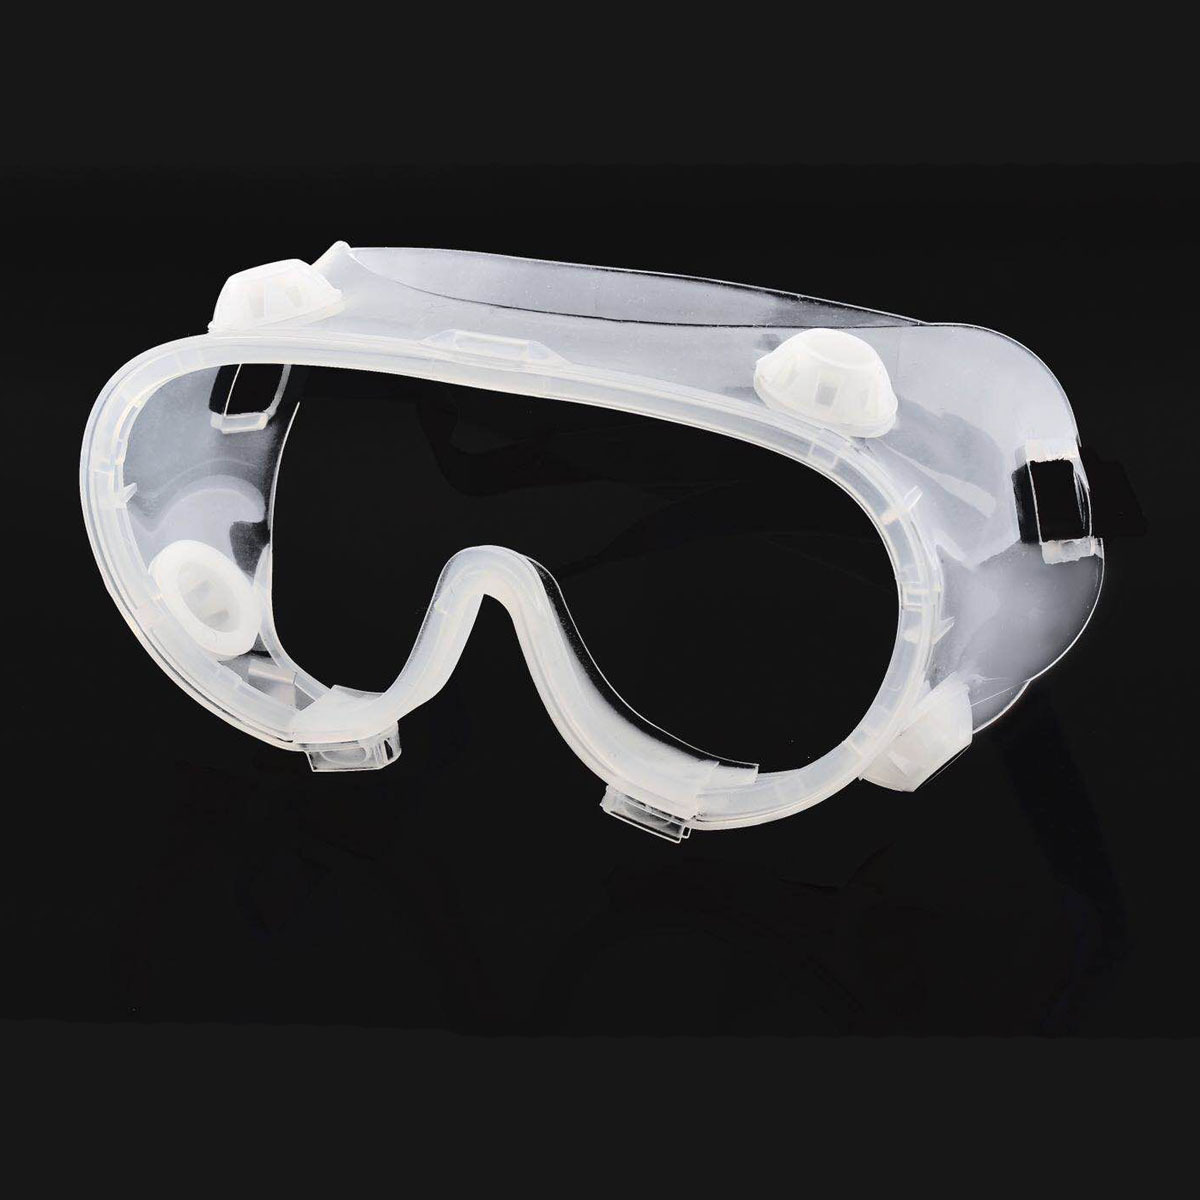 Прозрачные защитные очки защитные очки против брызг ветрозащитные рабочие защитные очки для промышленных исследований езда на велосипеде